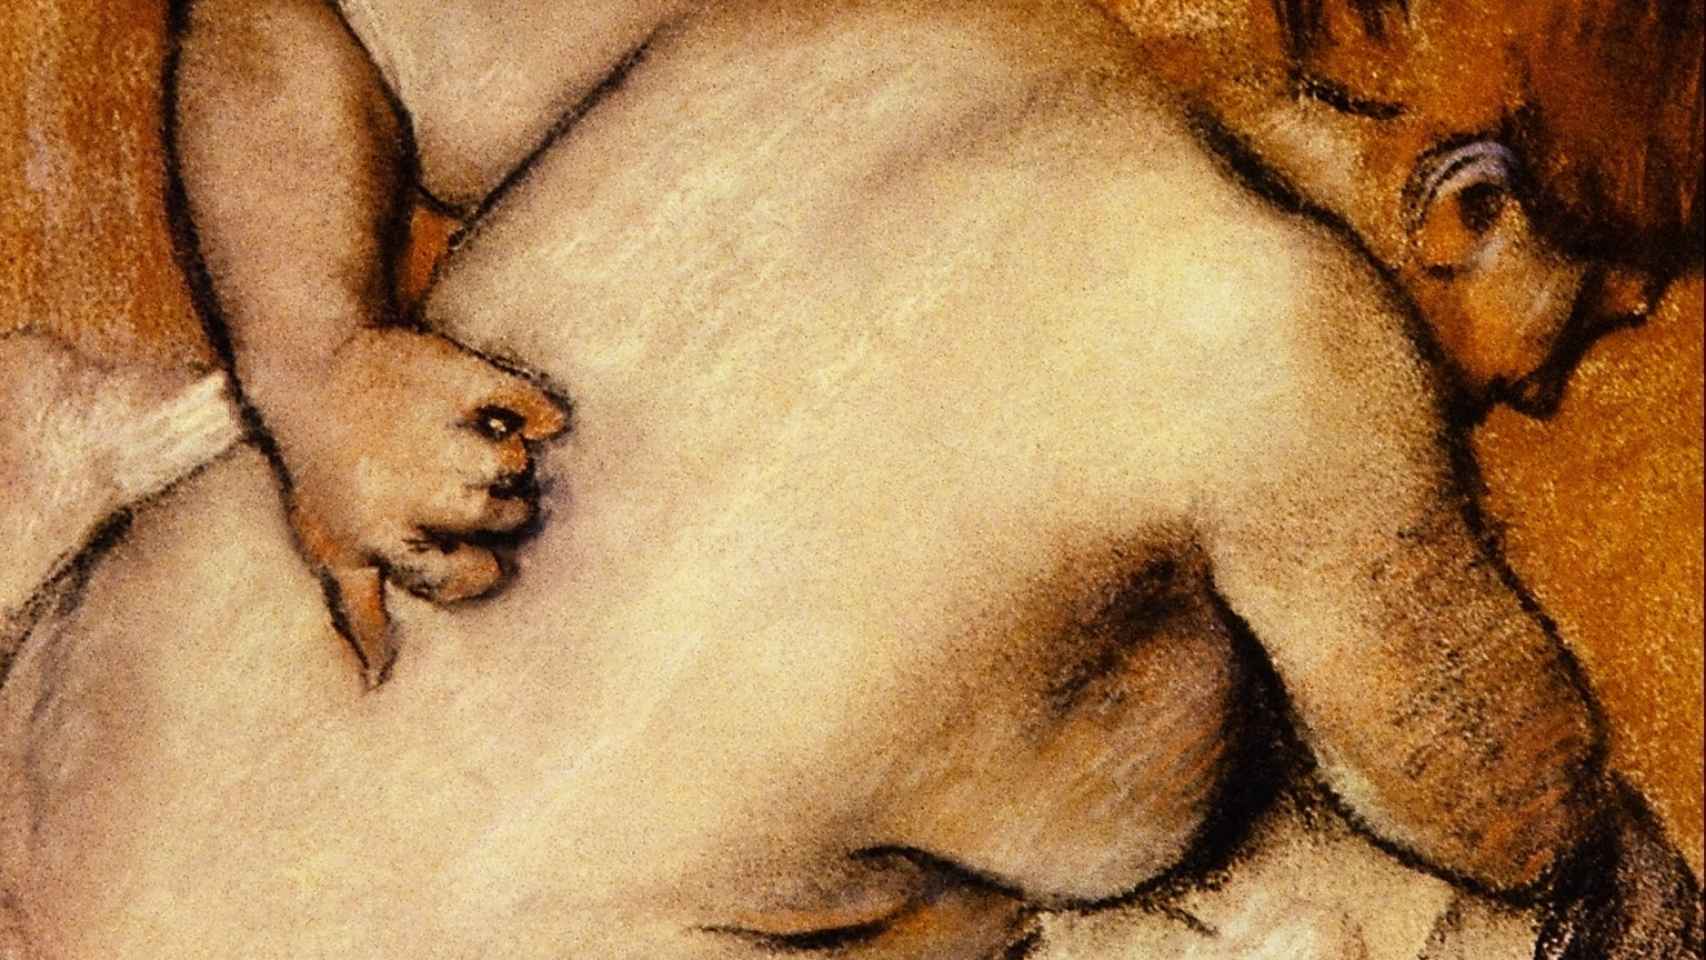 Mujer desnuda rascándose la espalda, de Edgar Degas.